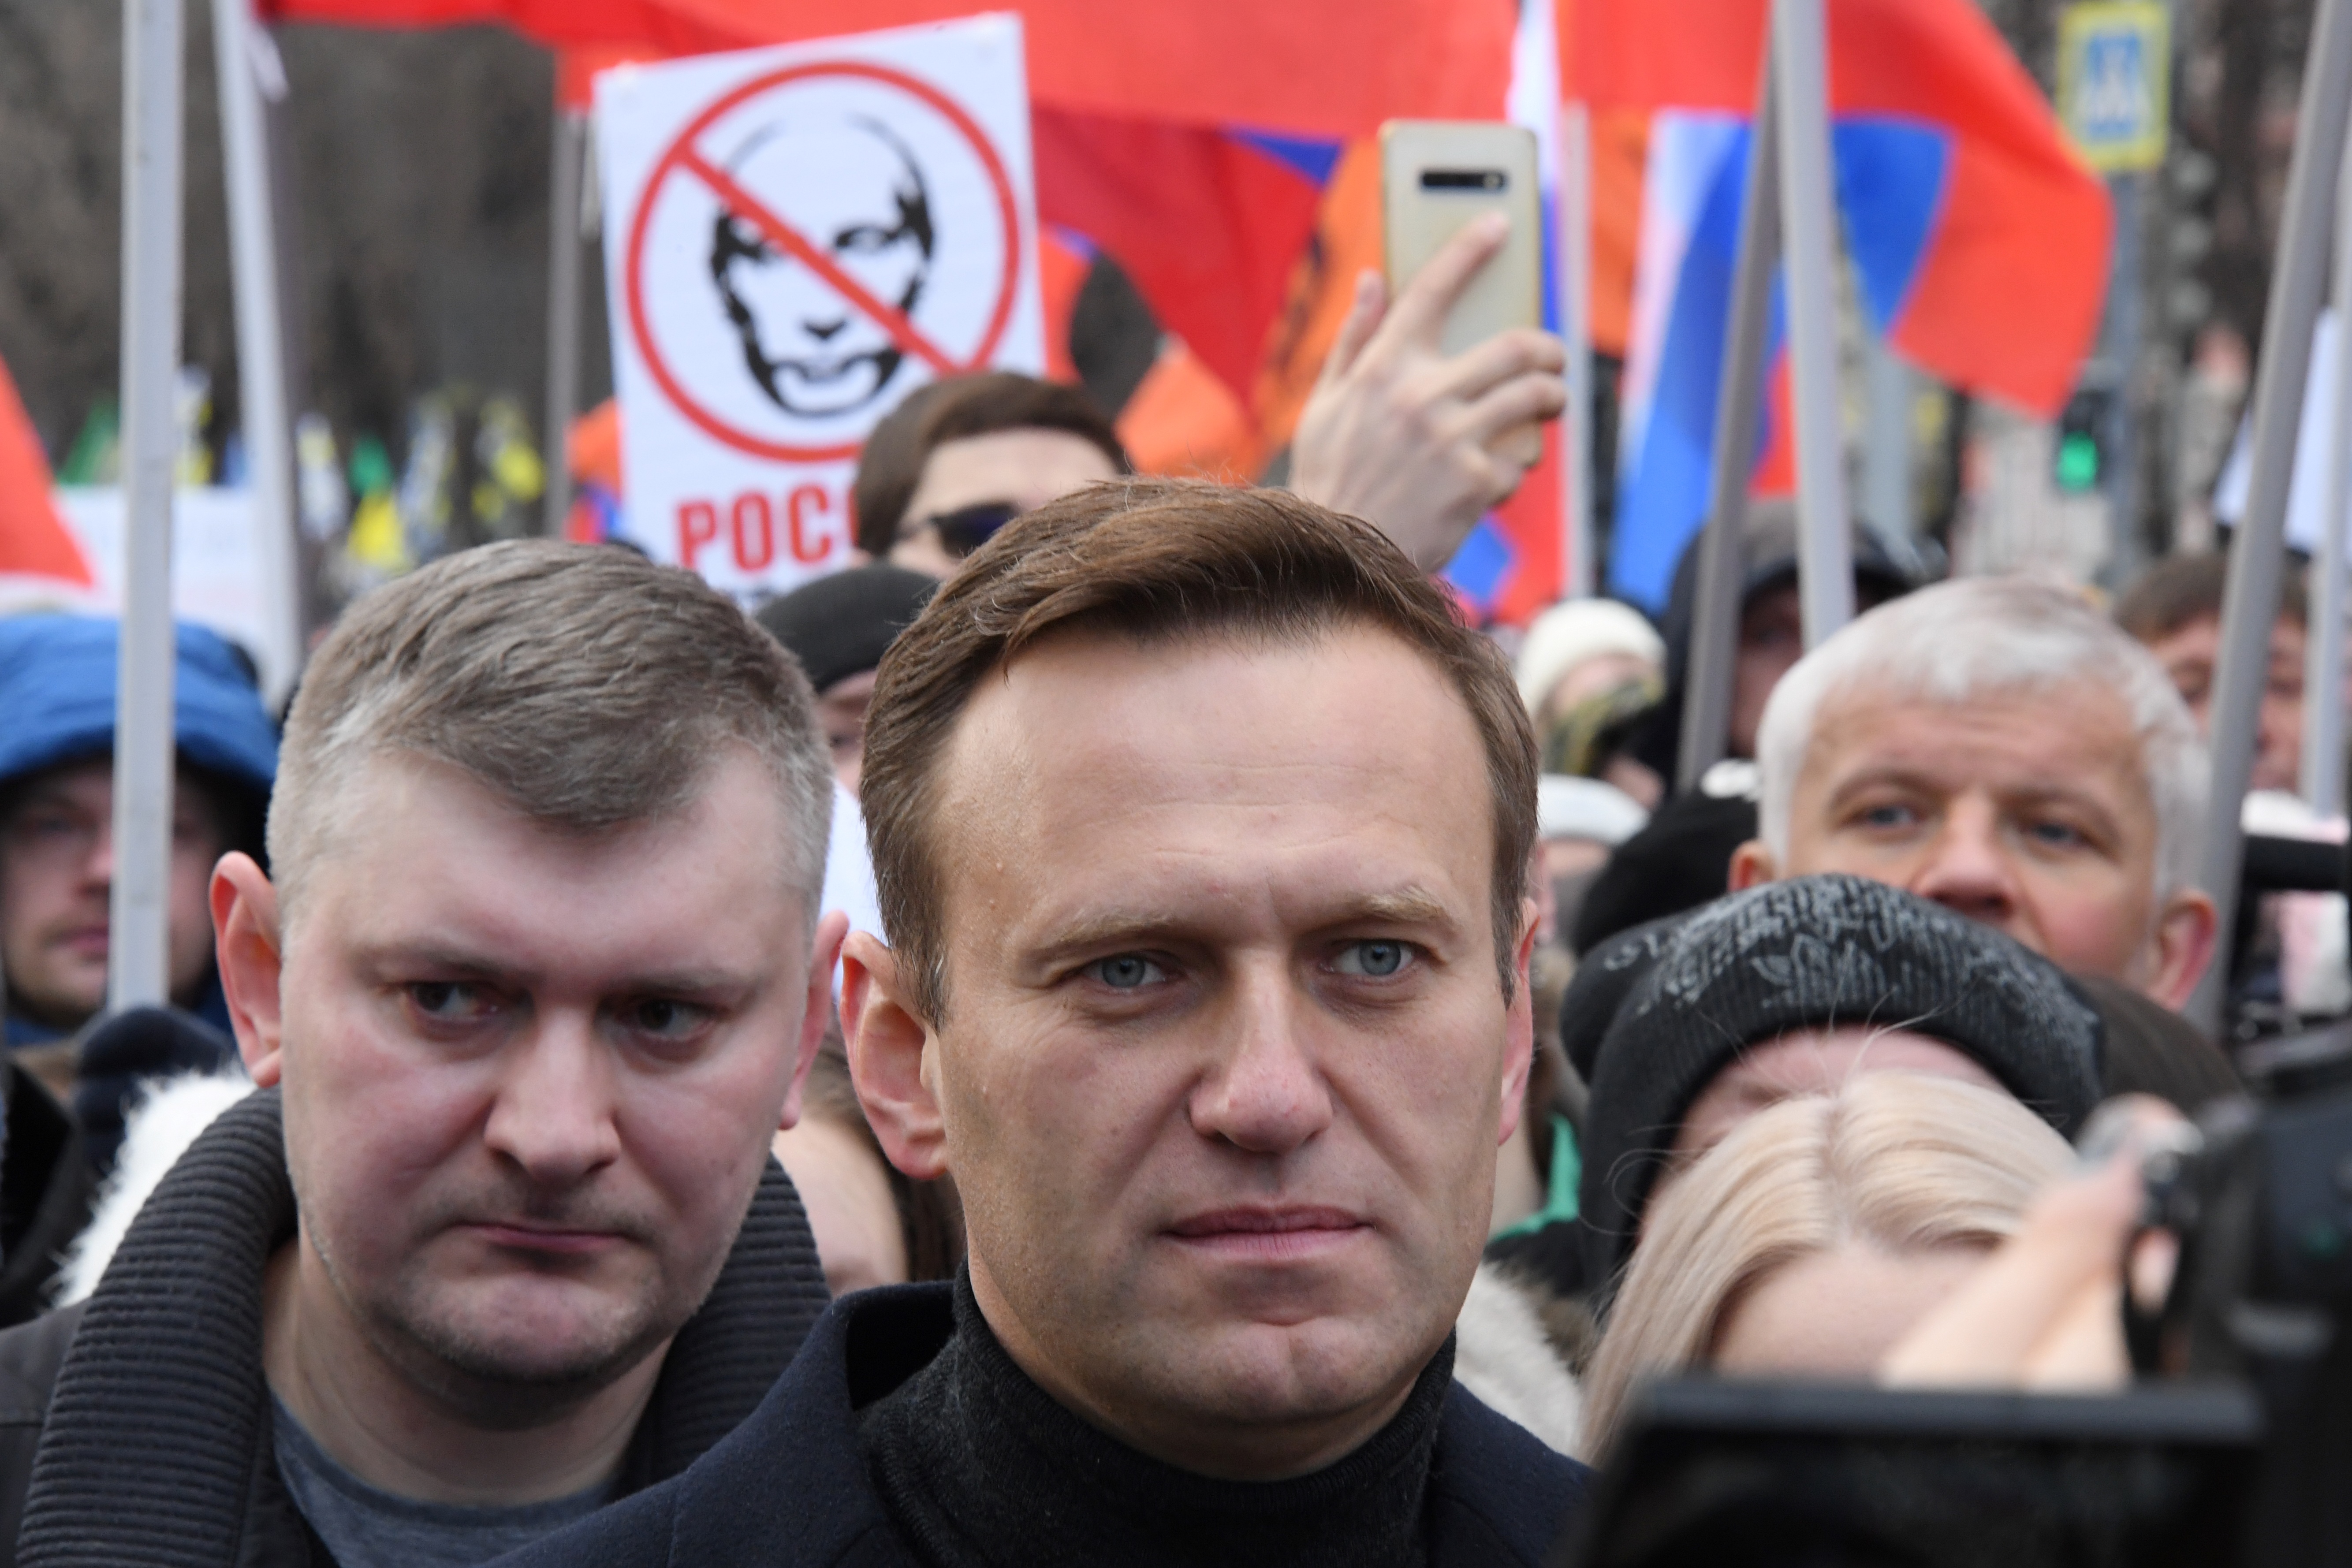 Az omszki kórház orvosai szerint náluk még nem volt megmérgezve Navalnij